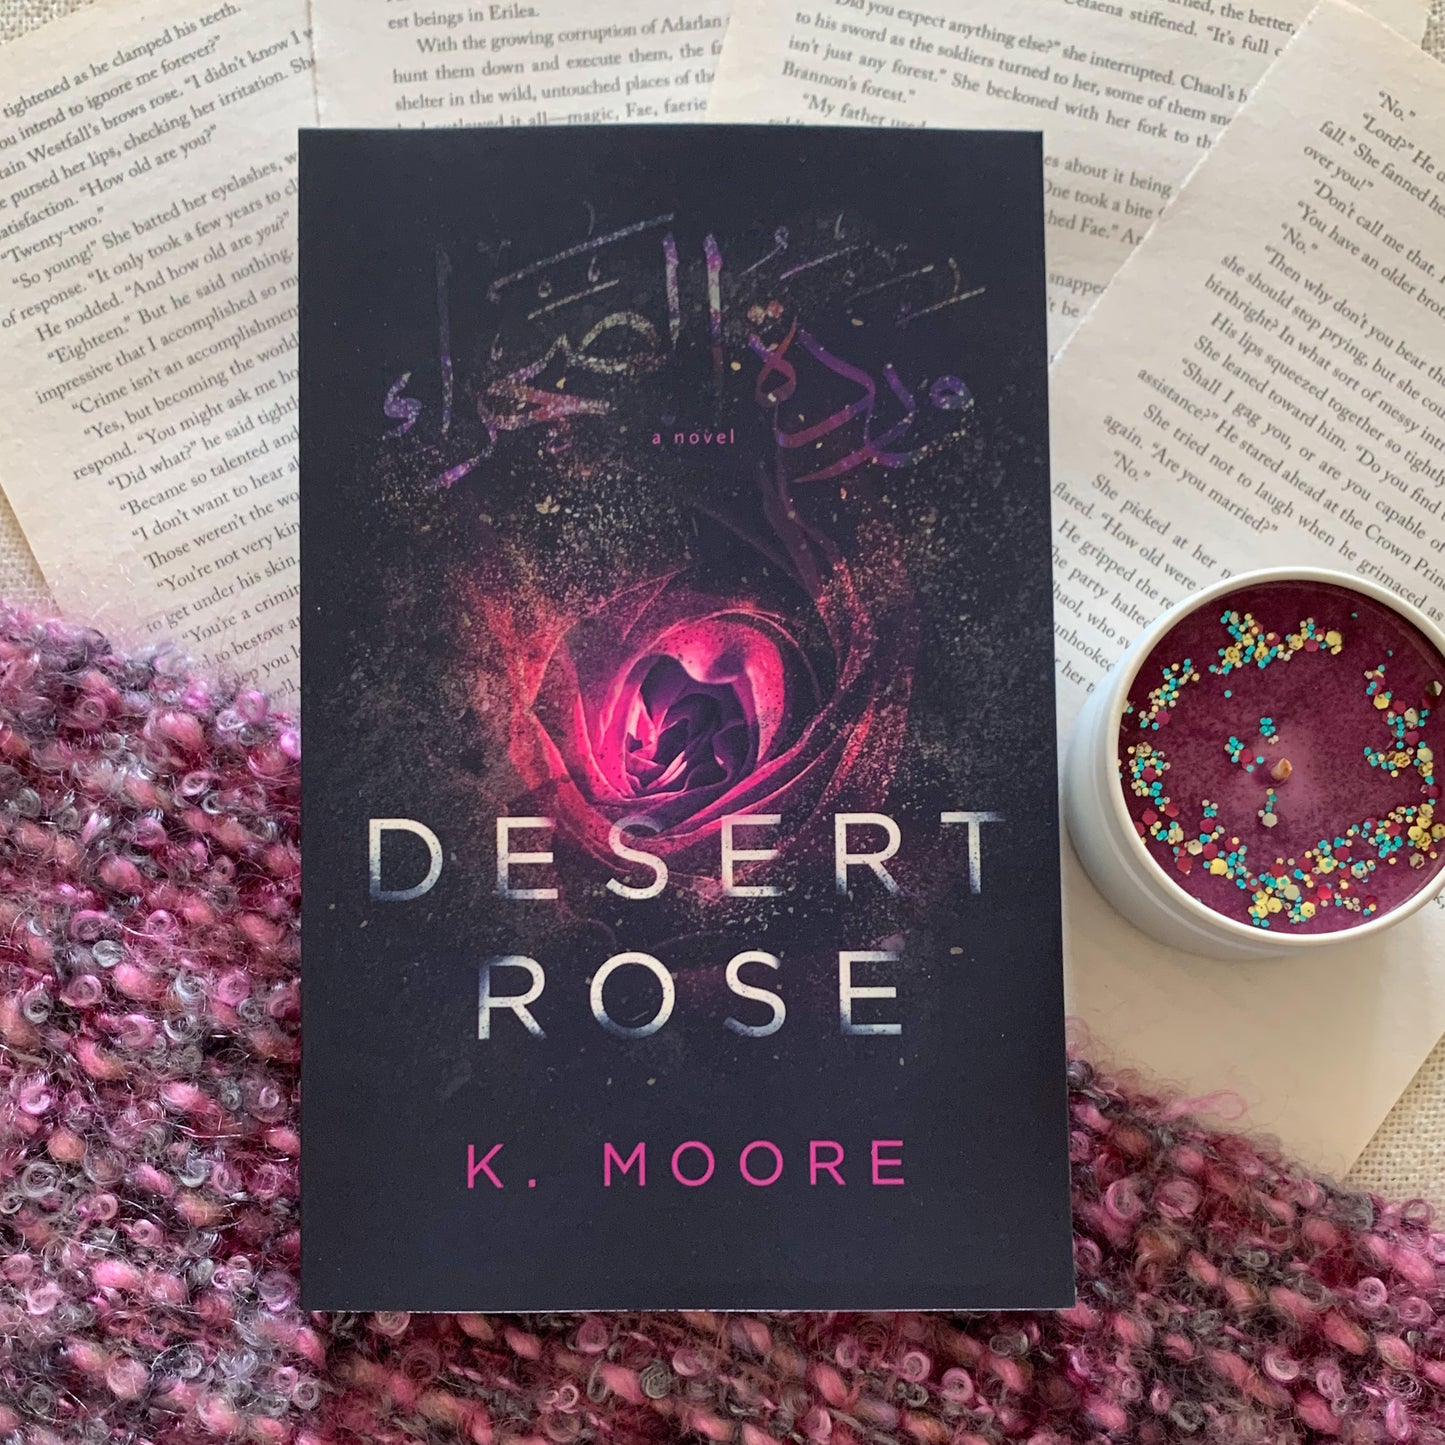 Desert Rose by K. Moore